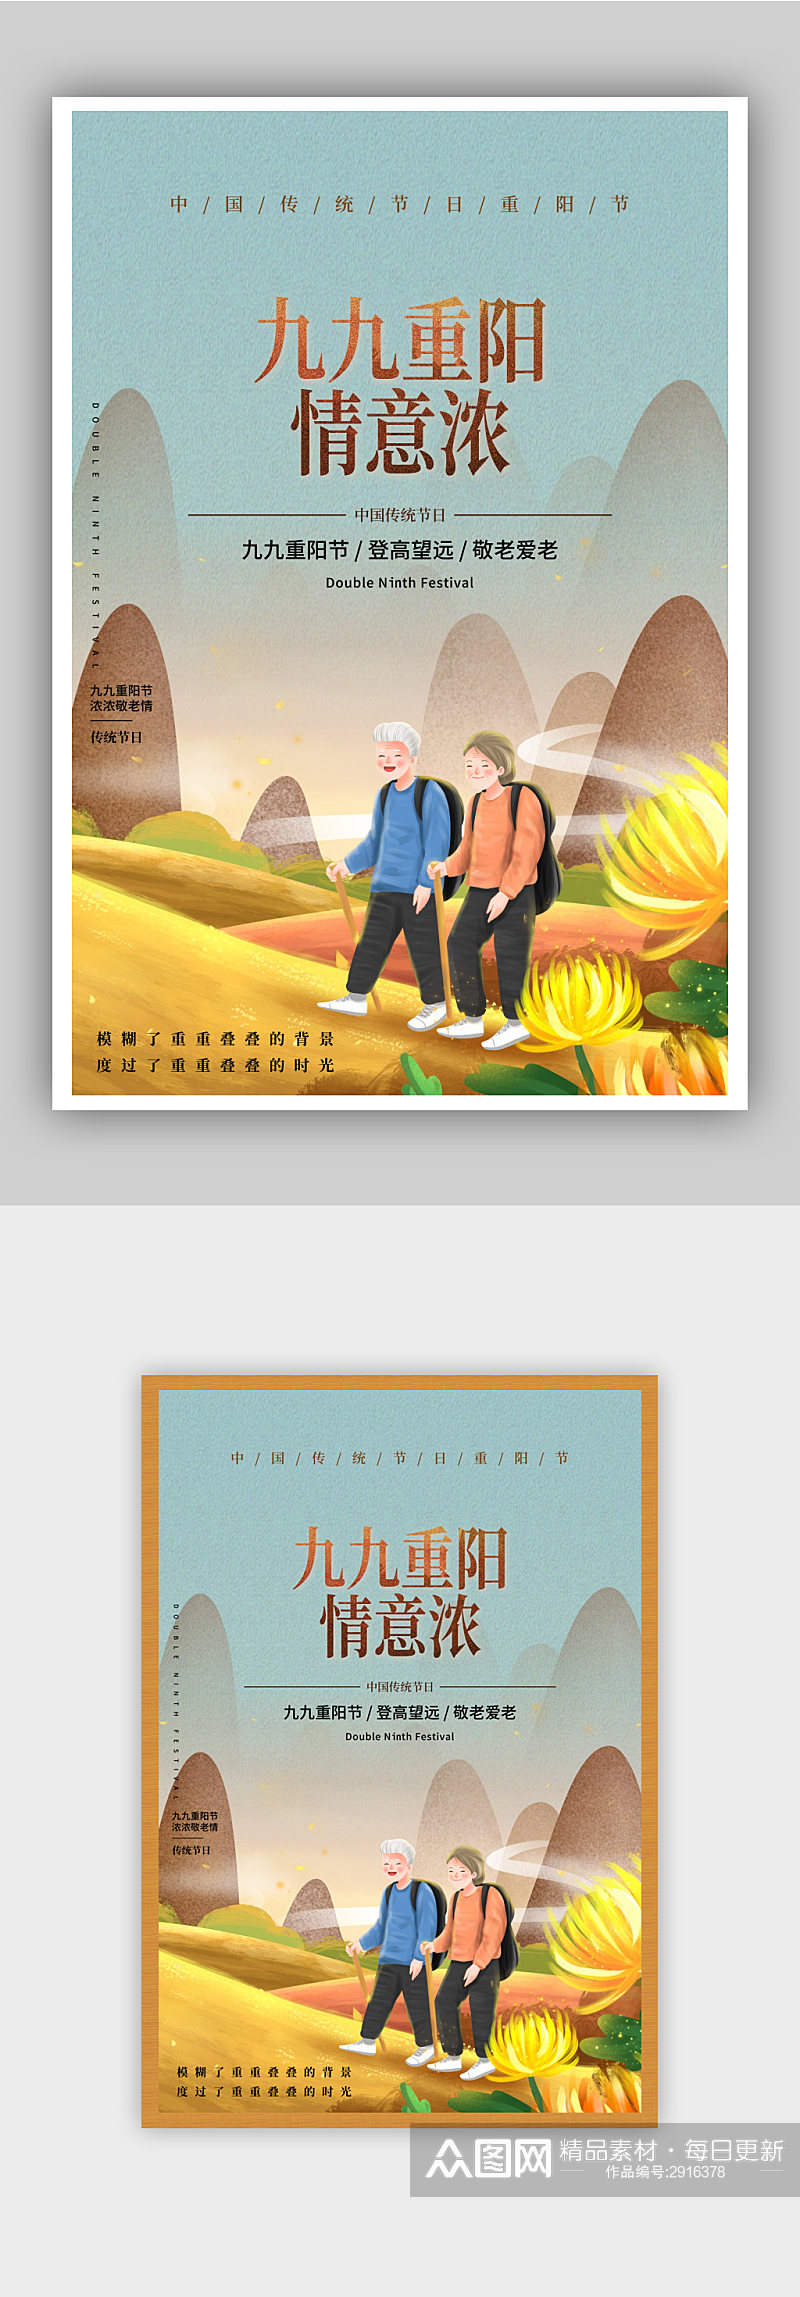 插画风中国农民丰收节海报素材